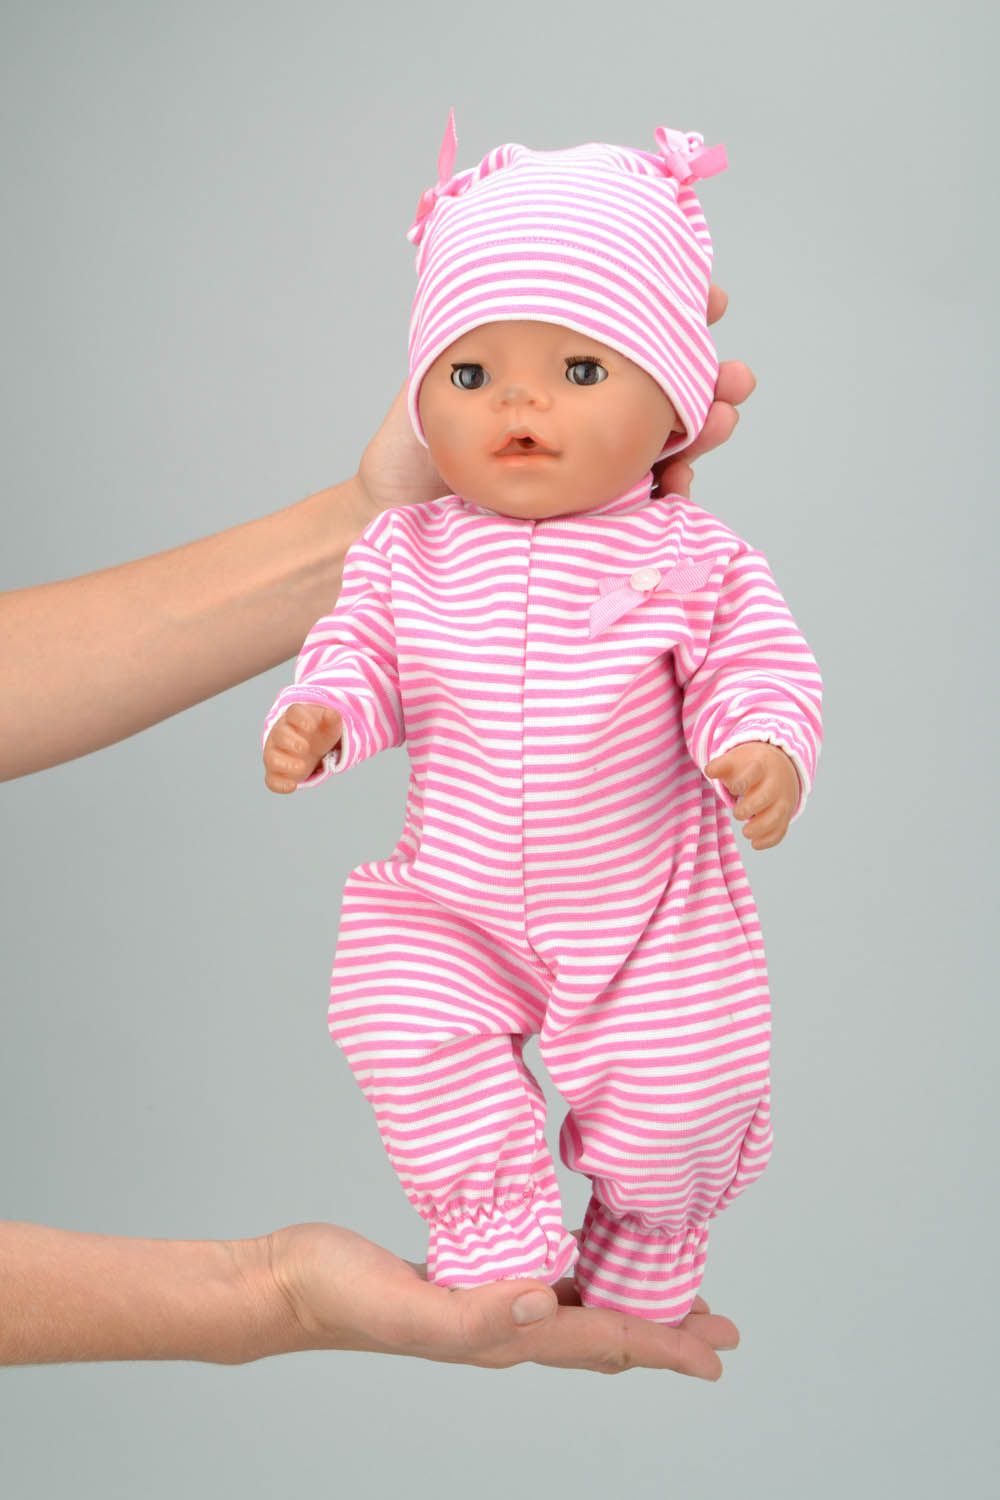 Accessoires poupée: une combinaison et un bonnet faits main photo 2